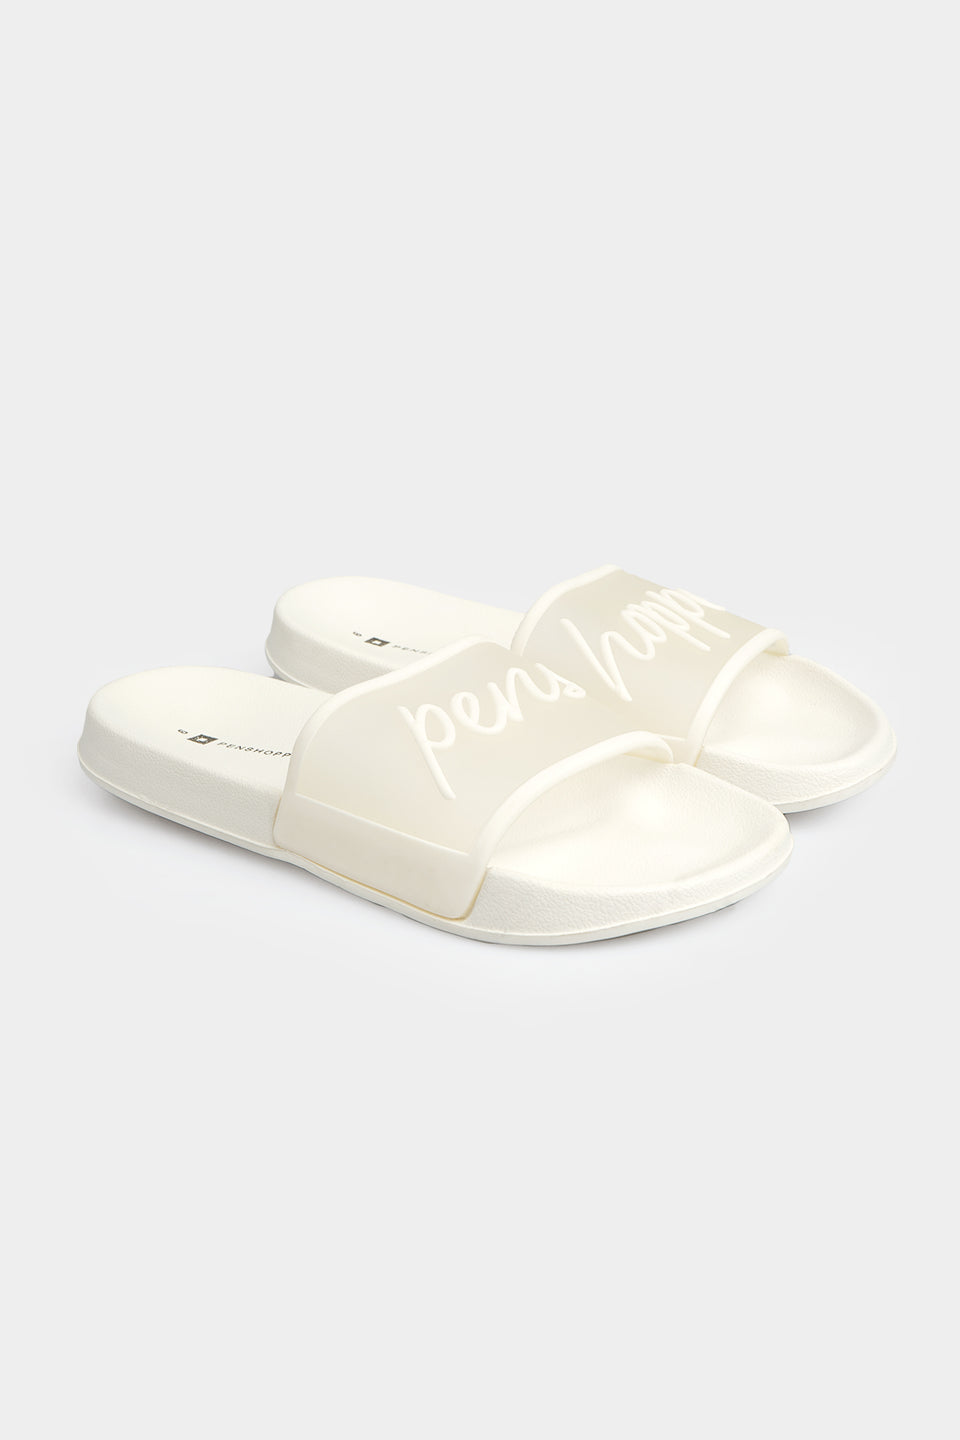 penshoppe slippers for female 2018